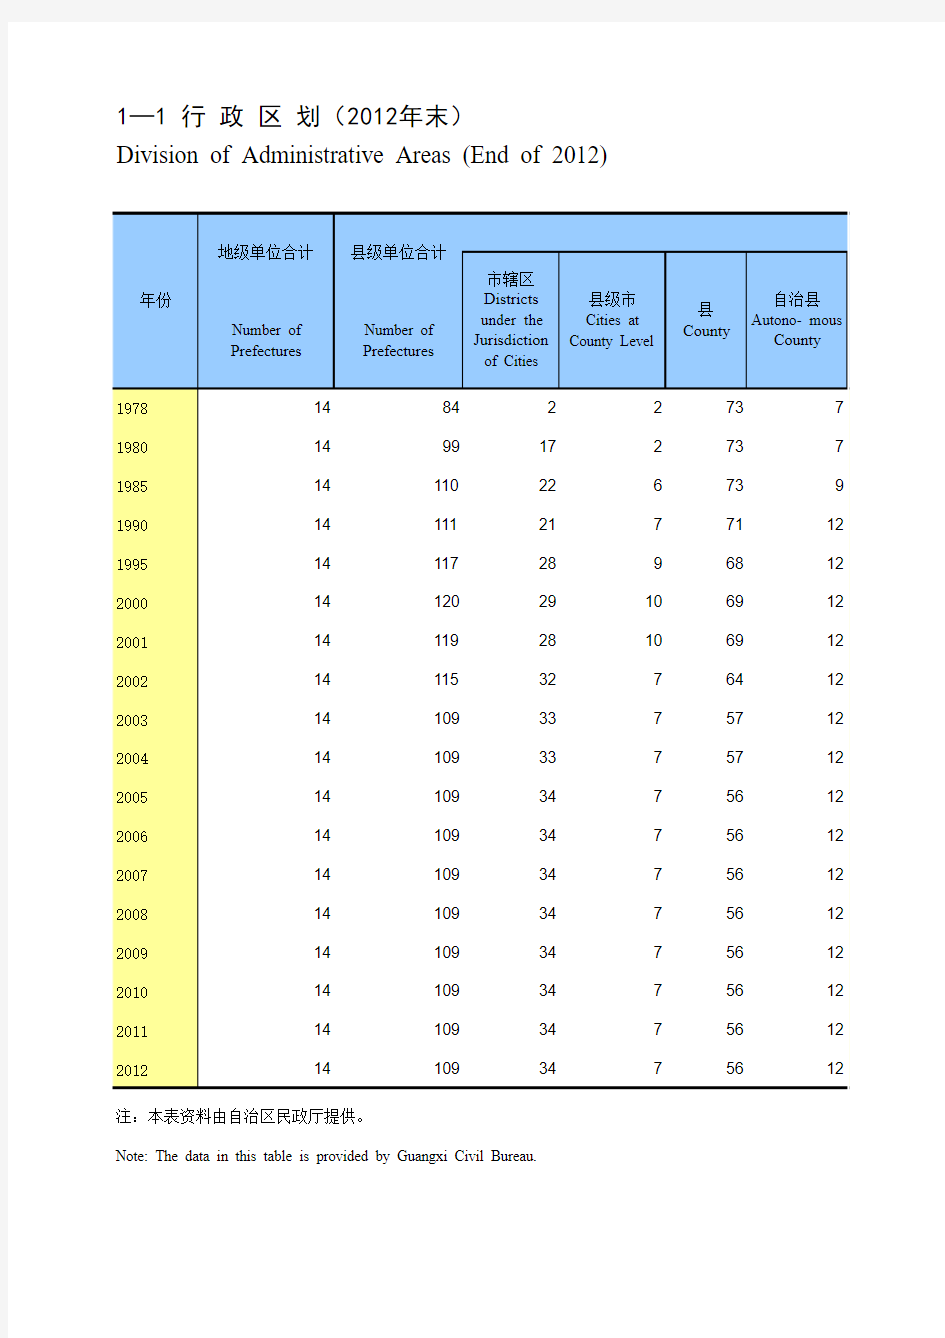 广西统计年鉴2013- 行政区划(2012年末)